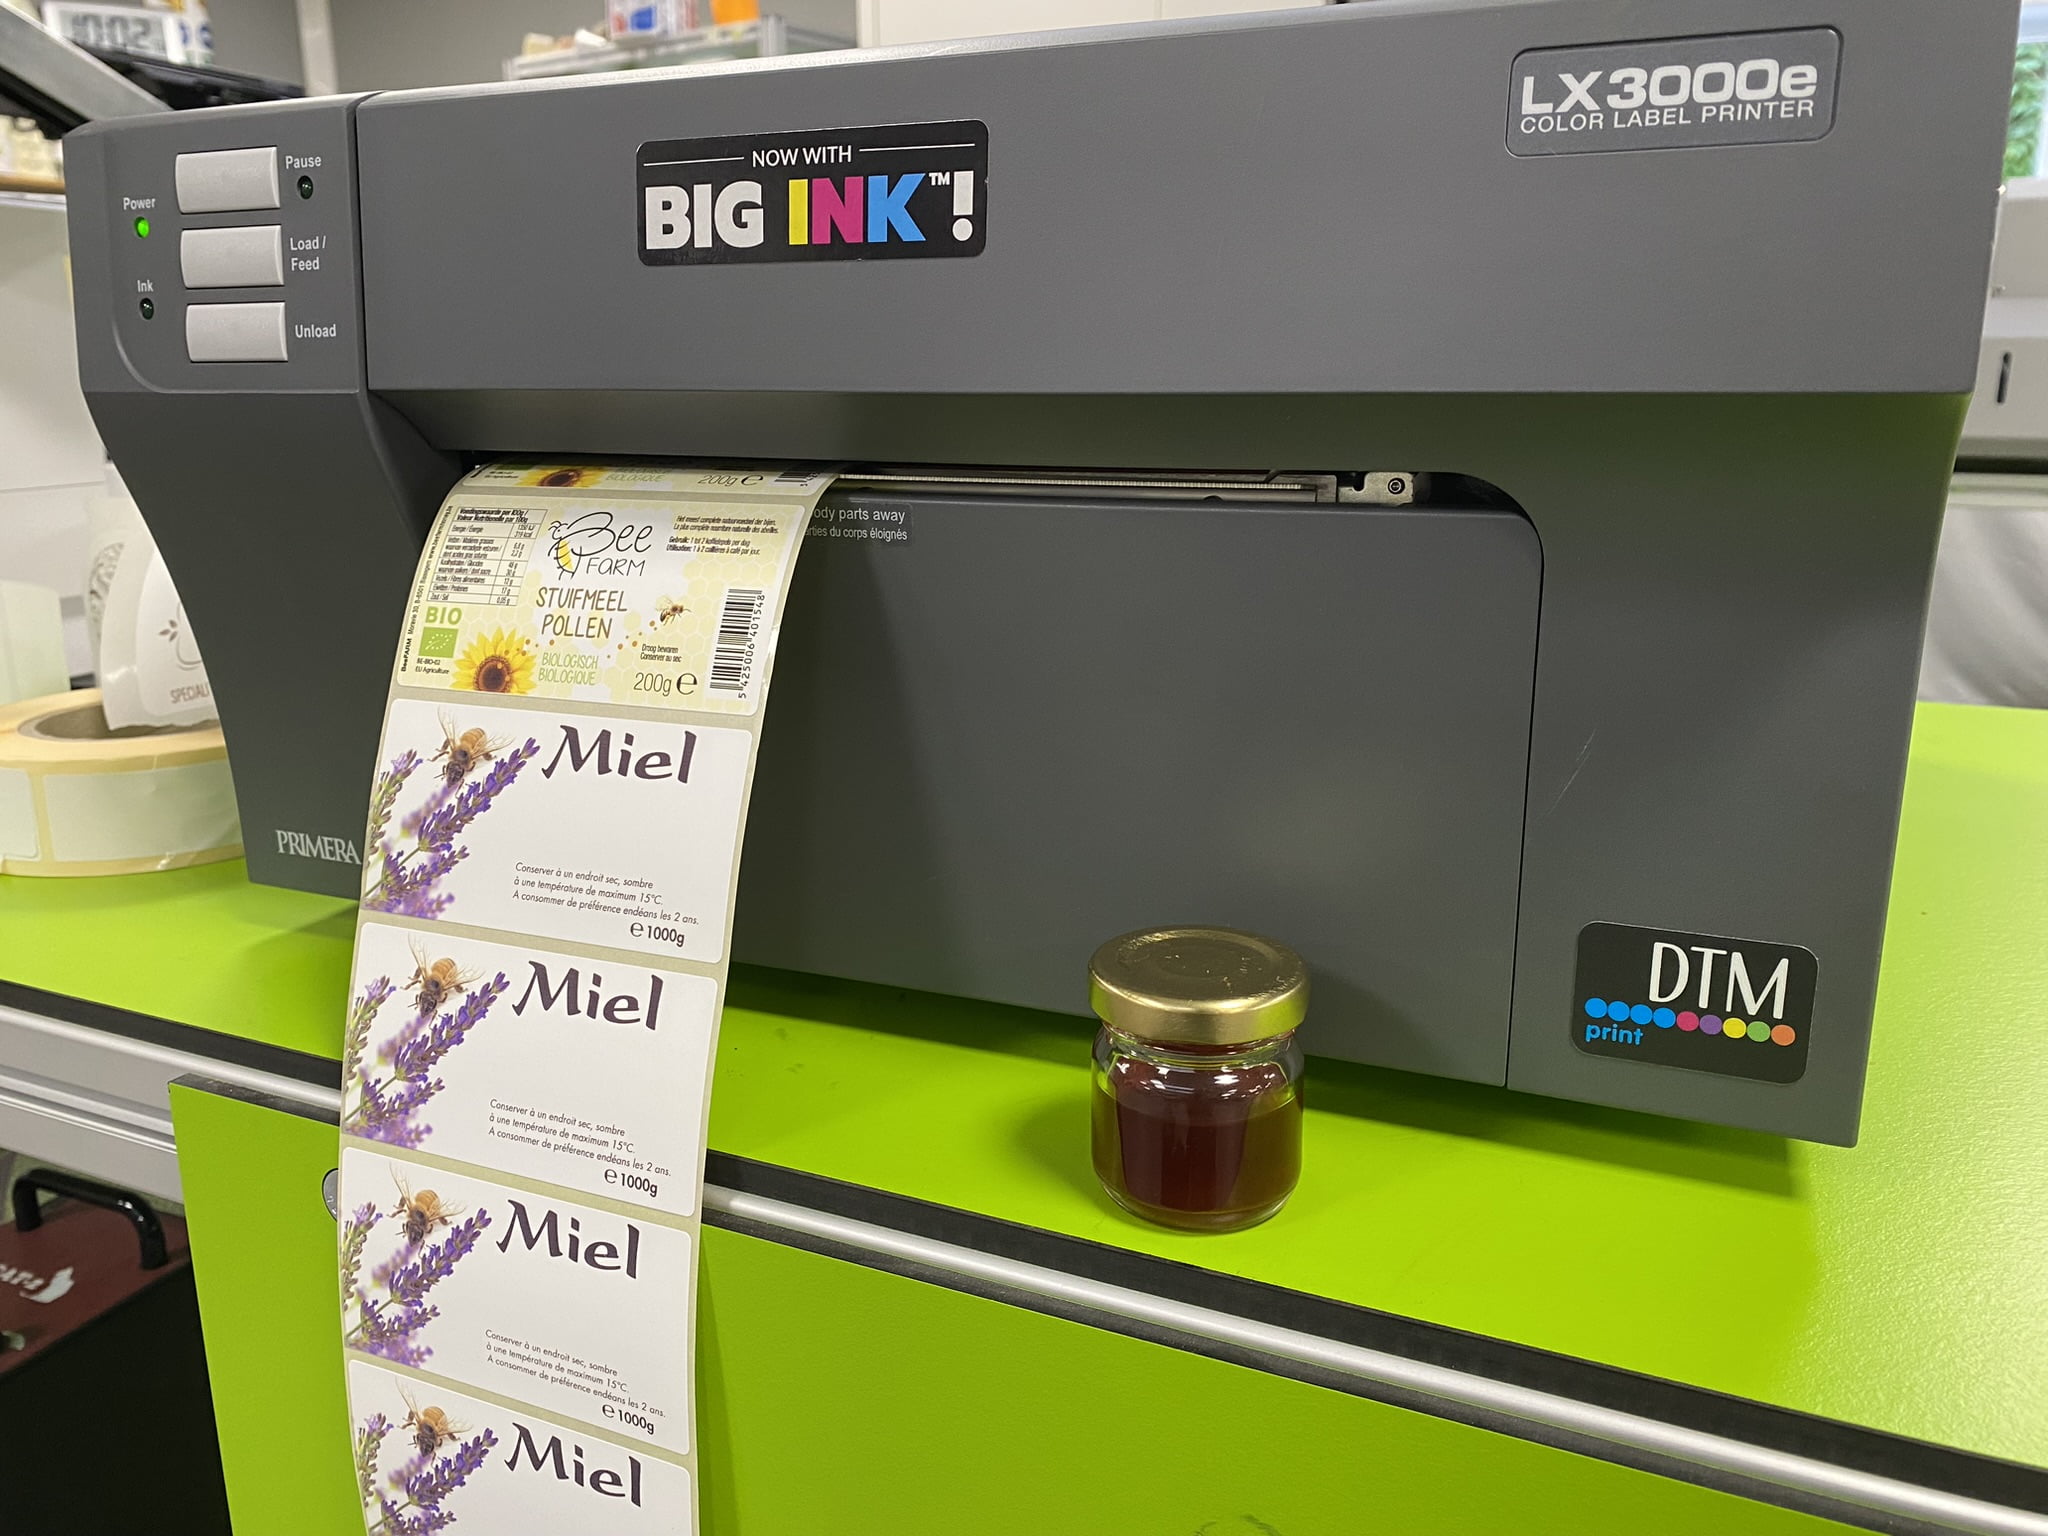 Les 10 principaux avantages d'une imprimante d'étiquettes couleur - Tasco